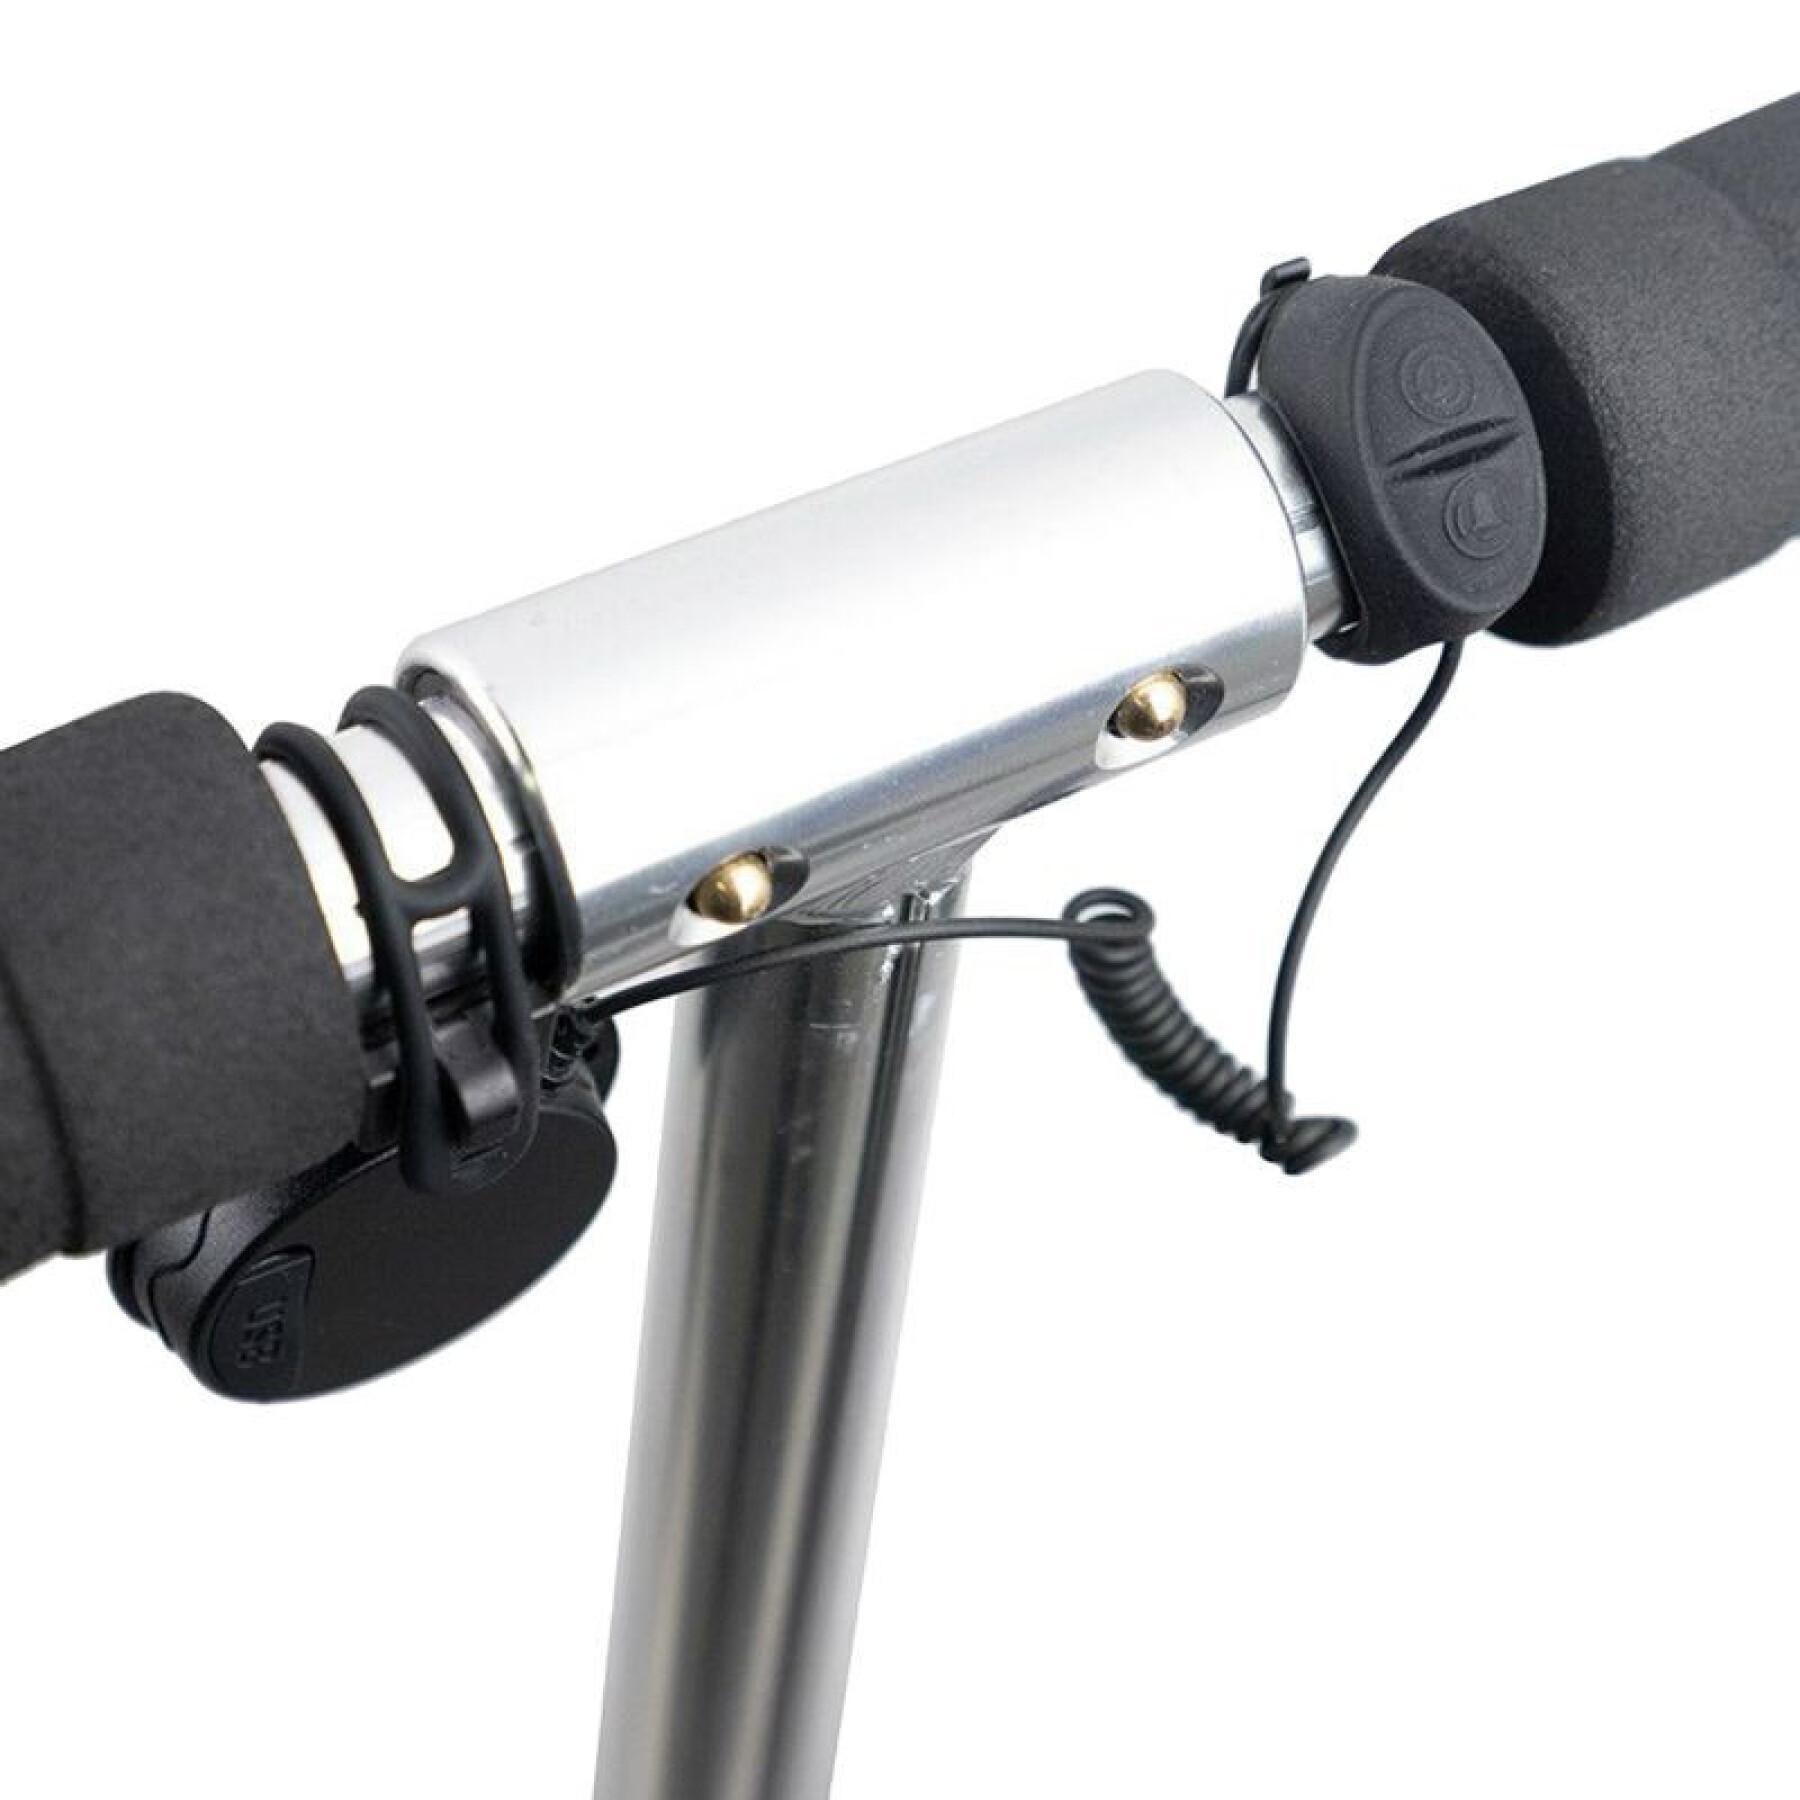 Sonnette - avertisseur vélo - trottinette électronique rechargeable usb - 4 sons 110-120 décibels enfant P2R